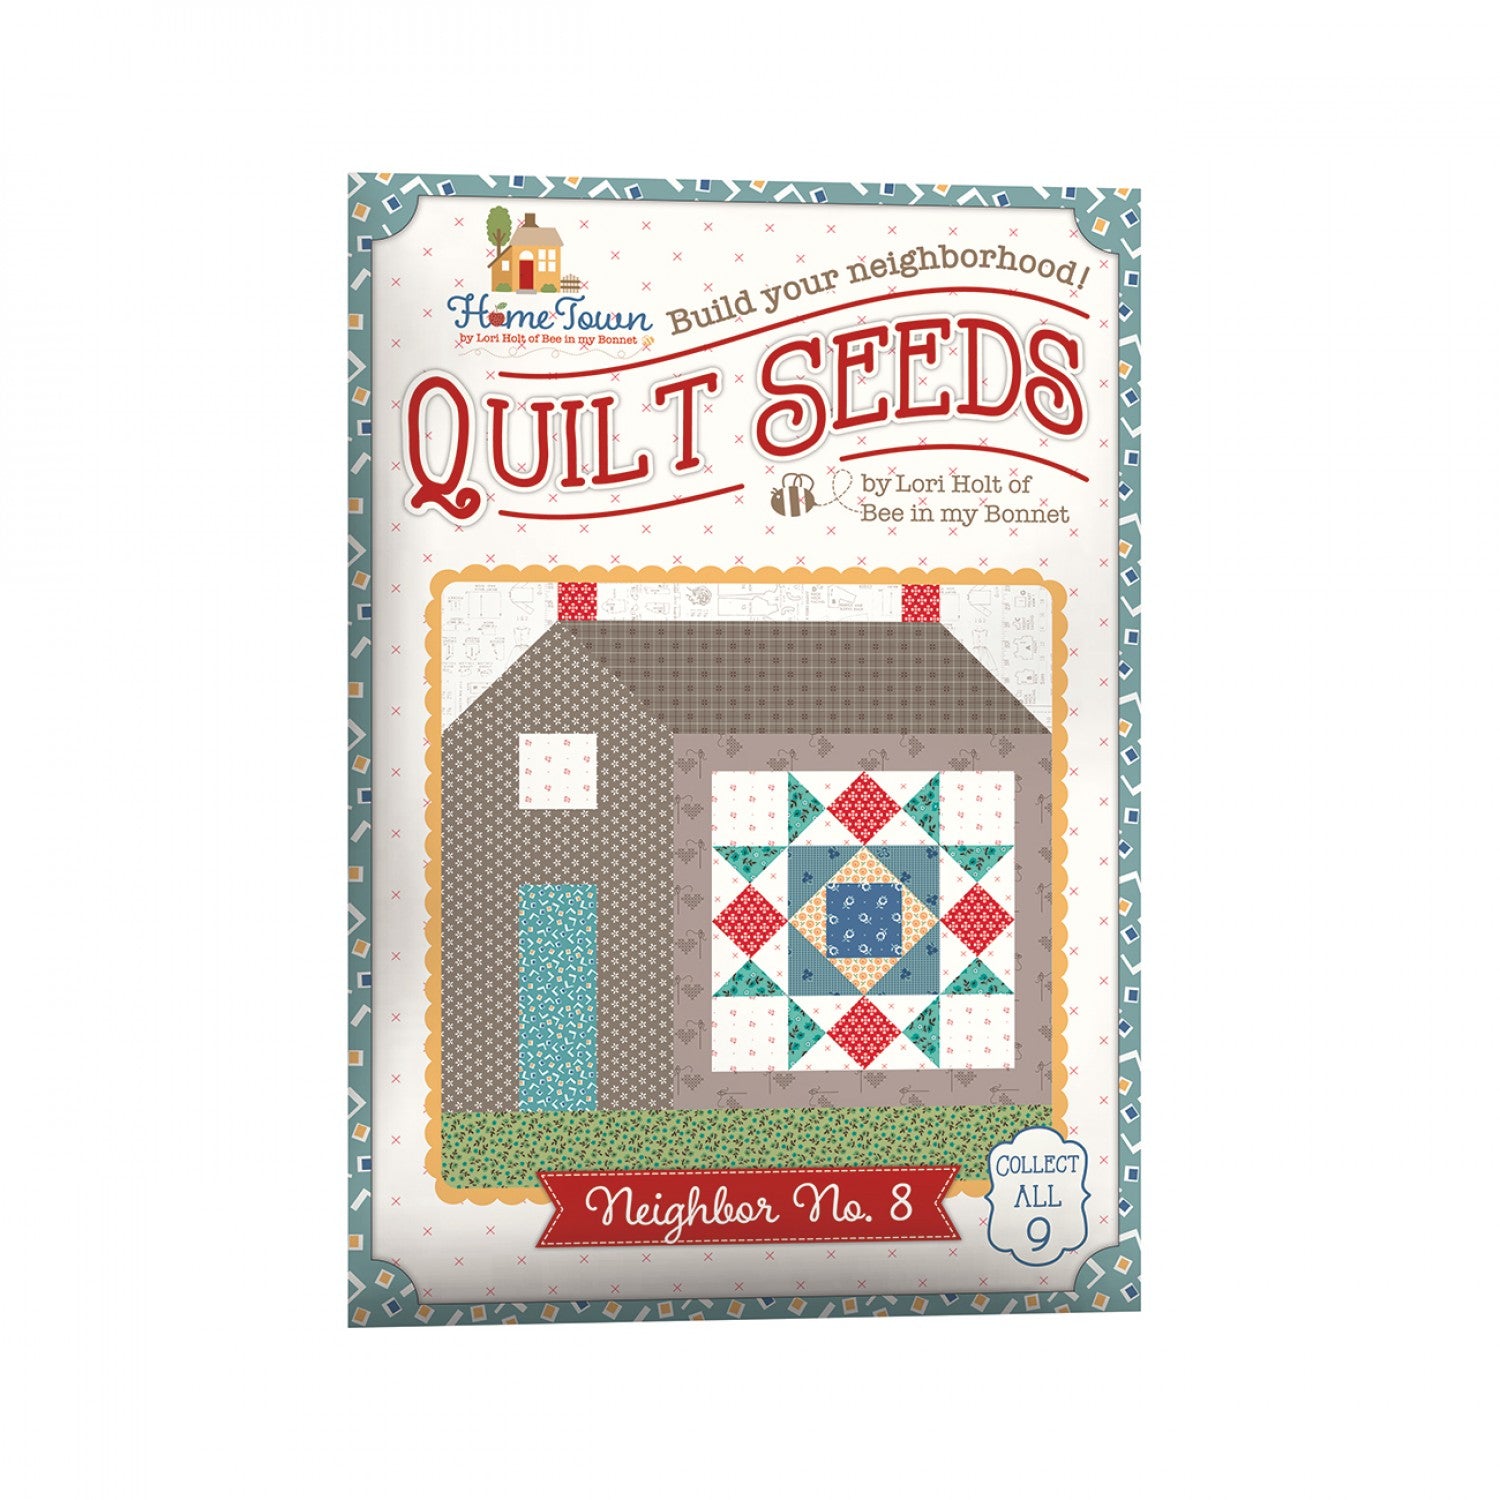 Quilt Seeds Neighbor No. 8